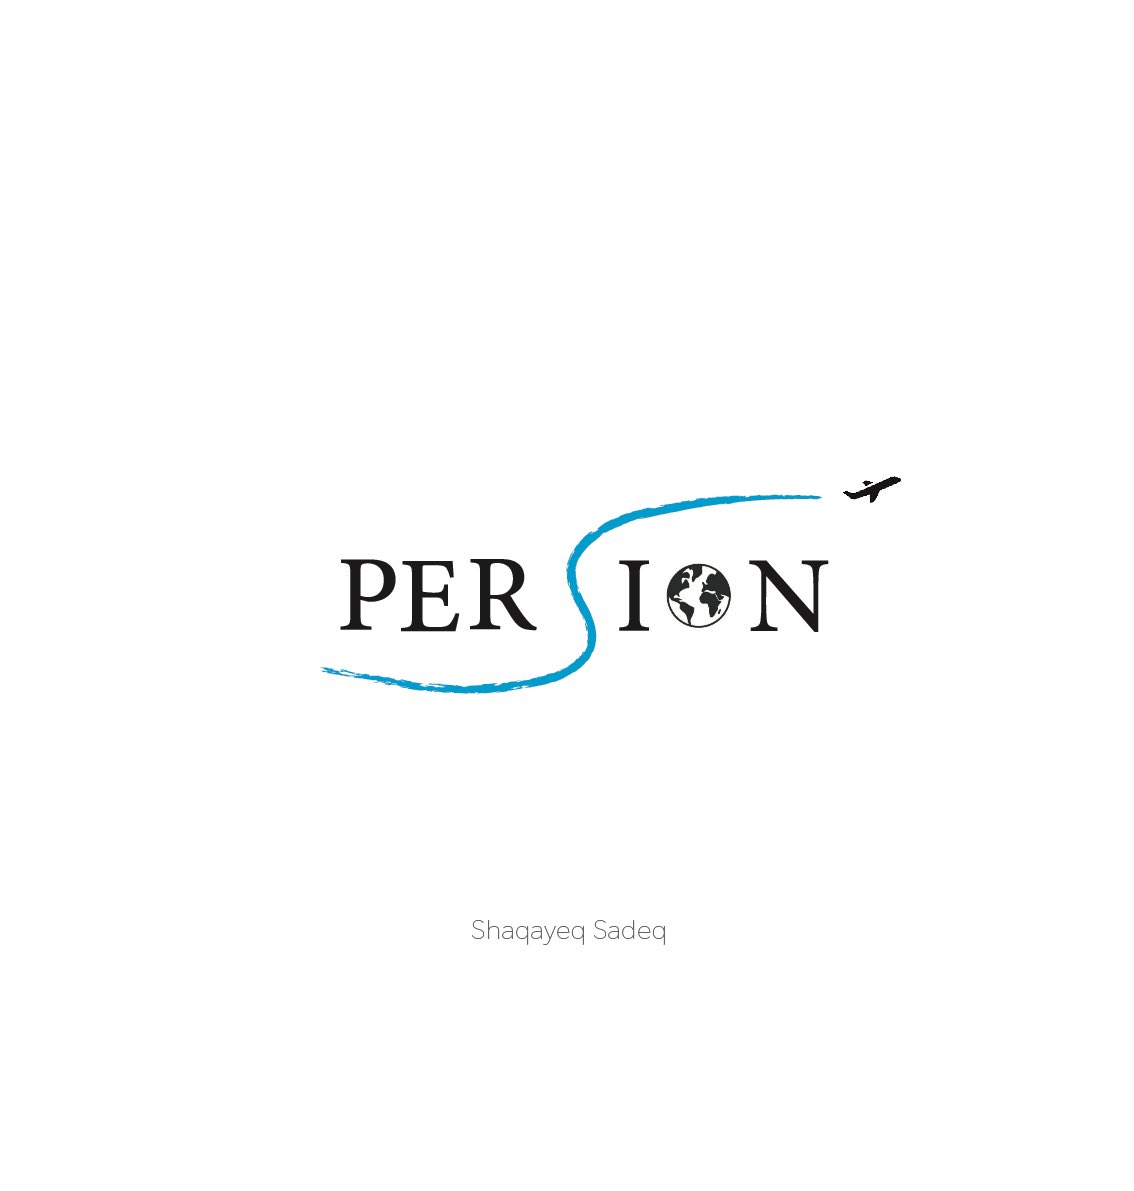 Logo design in illustrator✈️✨
For persion travel agency 🦋

@CodeToInspire 
@f_forough 
@Farahnaz786Art 
#digitalart
#logodesing 
#illustrator
#graphicdesigner 
#photoshop
#afghangirlsdesign 
#logo
#travel